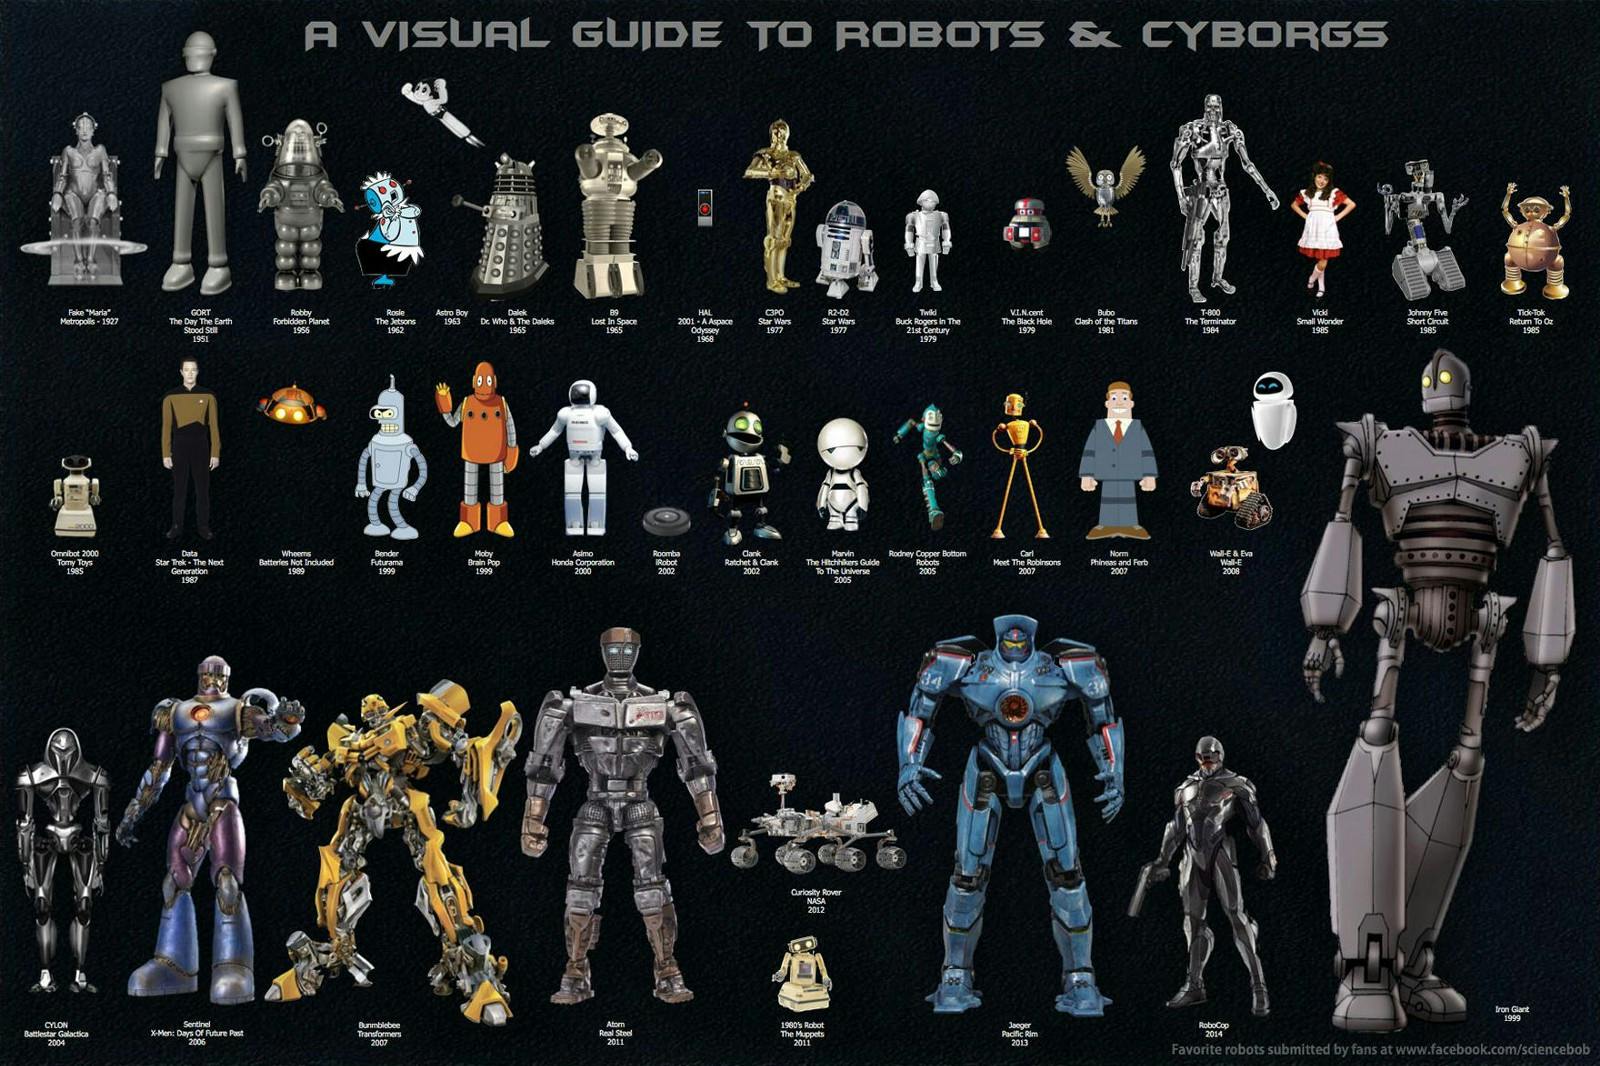 A visual guide to robots & cyborgs